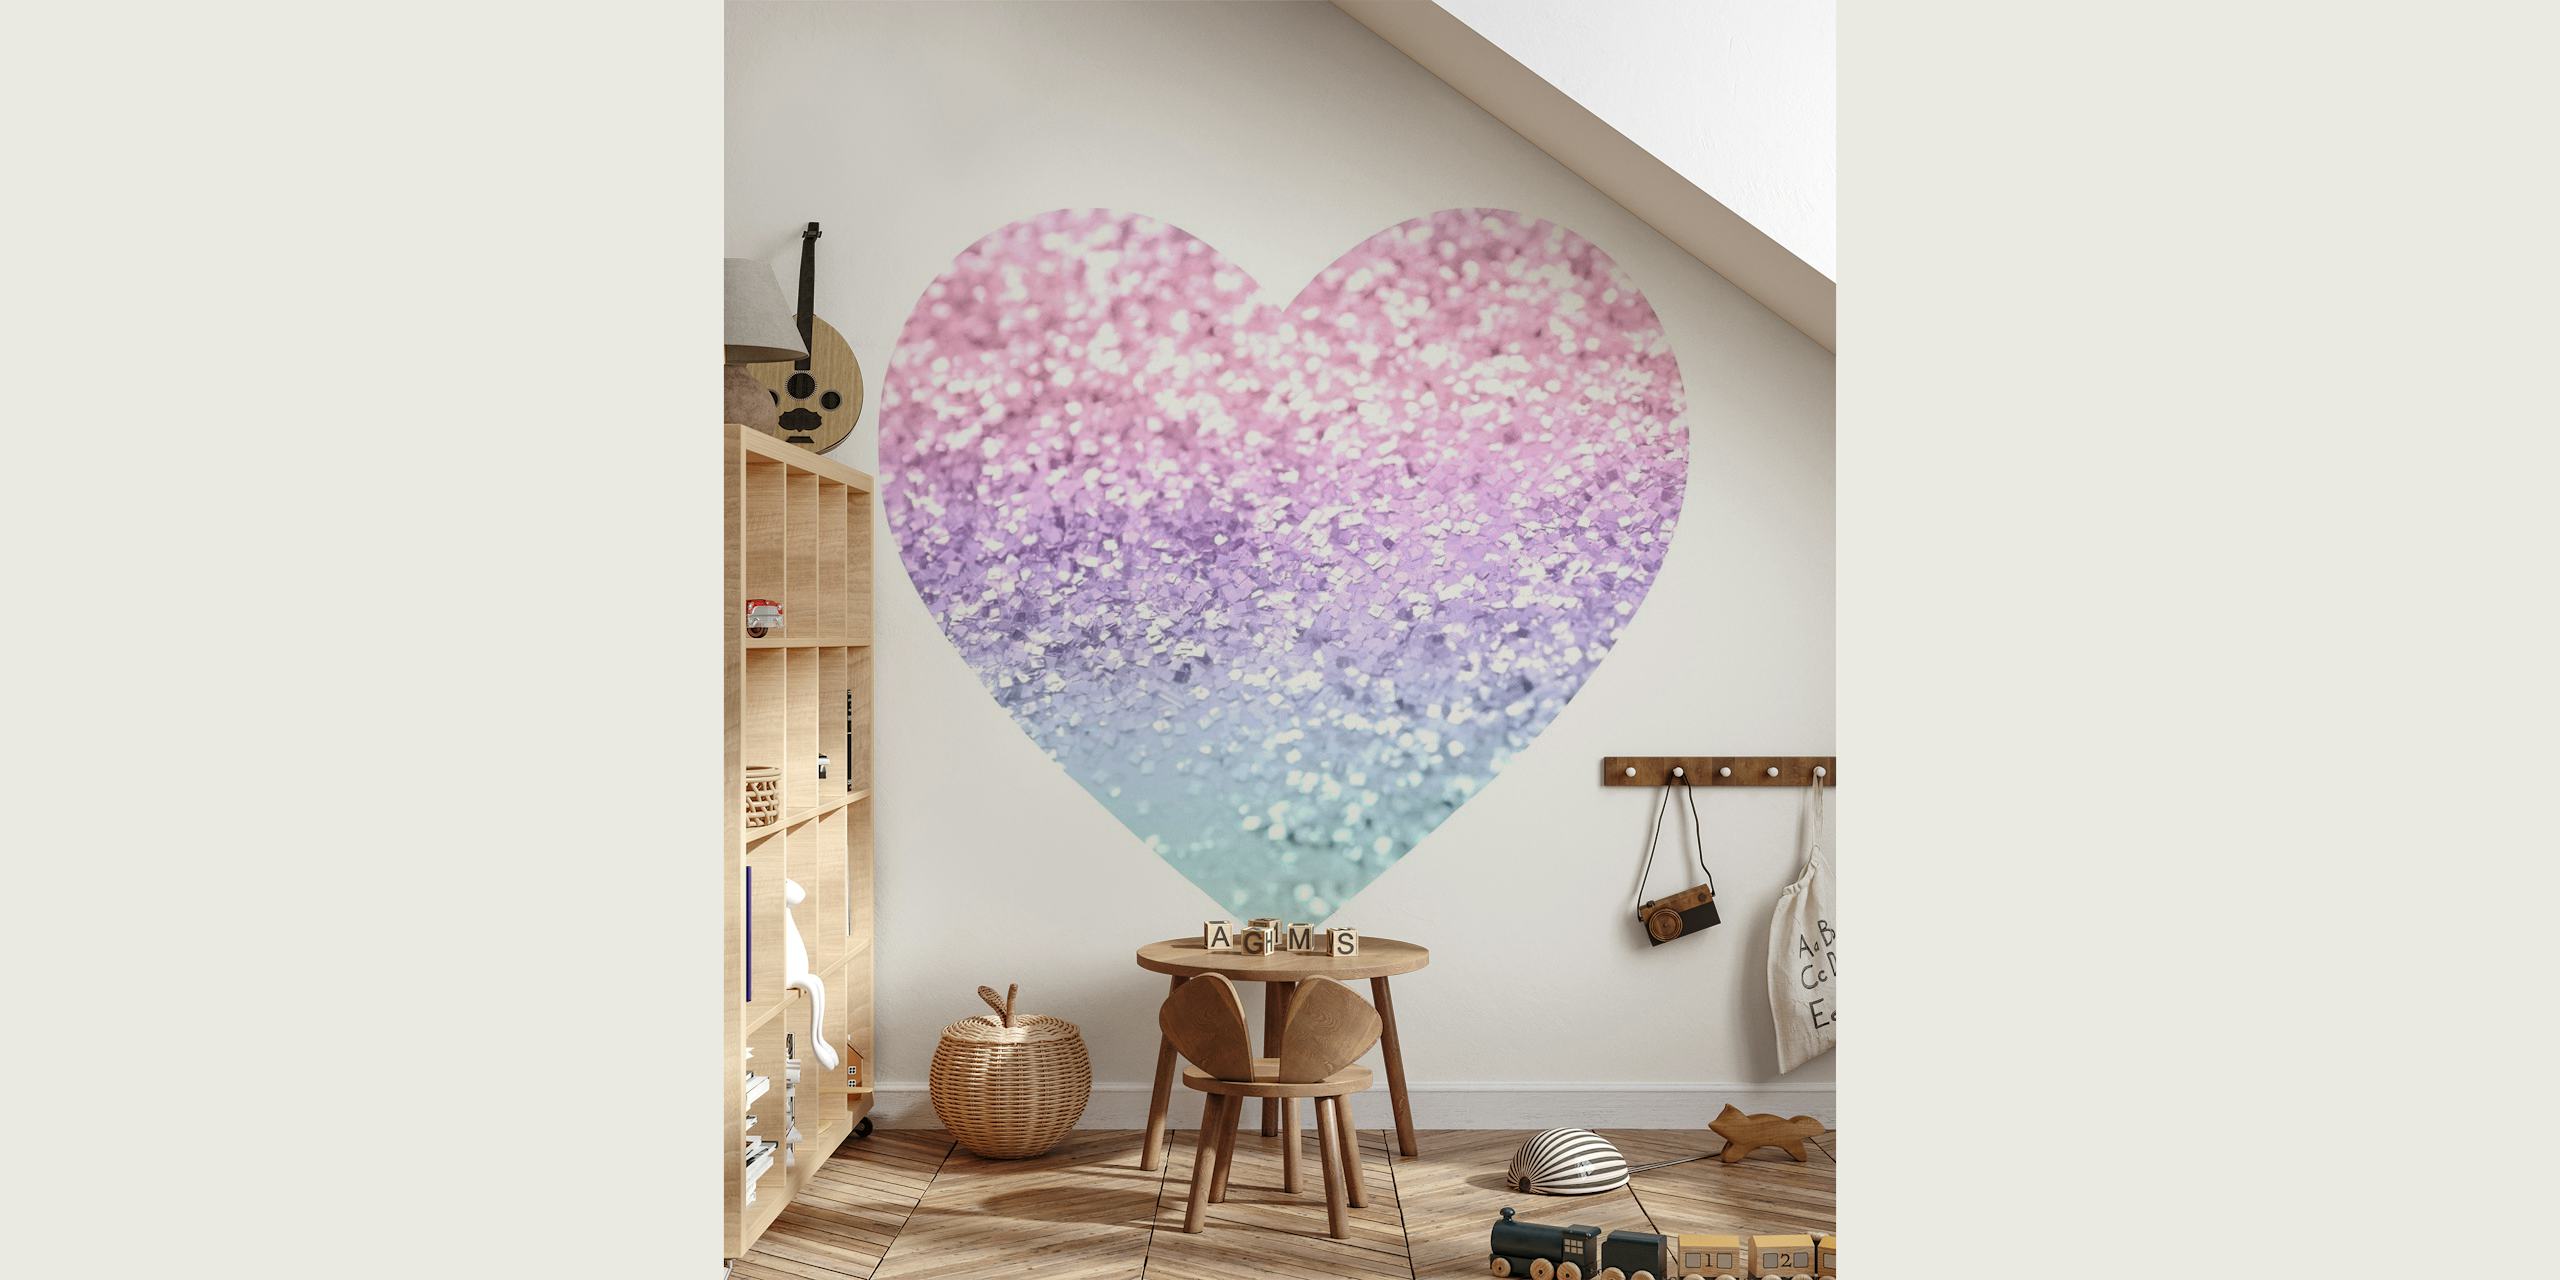 Fotomural vinílico de parede com coração glitter inspirado em unicórnio em rosa, roxo e azul